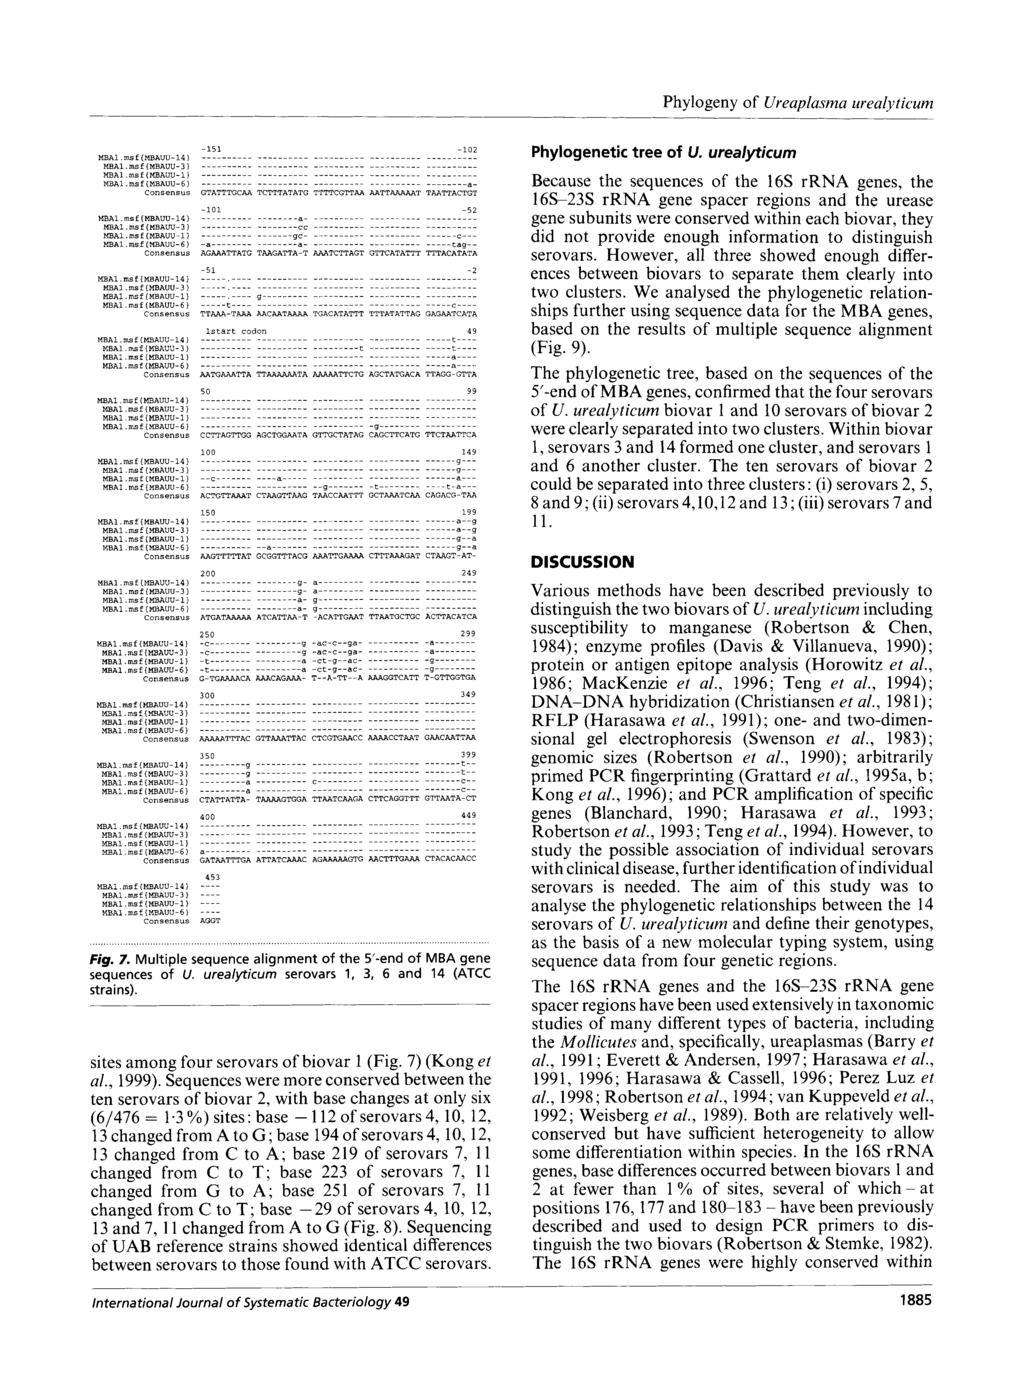 Phylogeny of Ureaplasrna urealyticum MBAl.msf(MBAUU14) MBAl.msf(MBAUU3) MBAl.msf{MBAUU1) MBAl.msf {MBAUU6) MBAl.msf(MBAUU14) MBAl.msf(Ml3AW3) MBAl.msf(MBAUU11 MBAl.msf(MBAUU6) MBAl.rnsf(MBAUU14) MBAl.